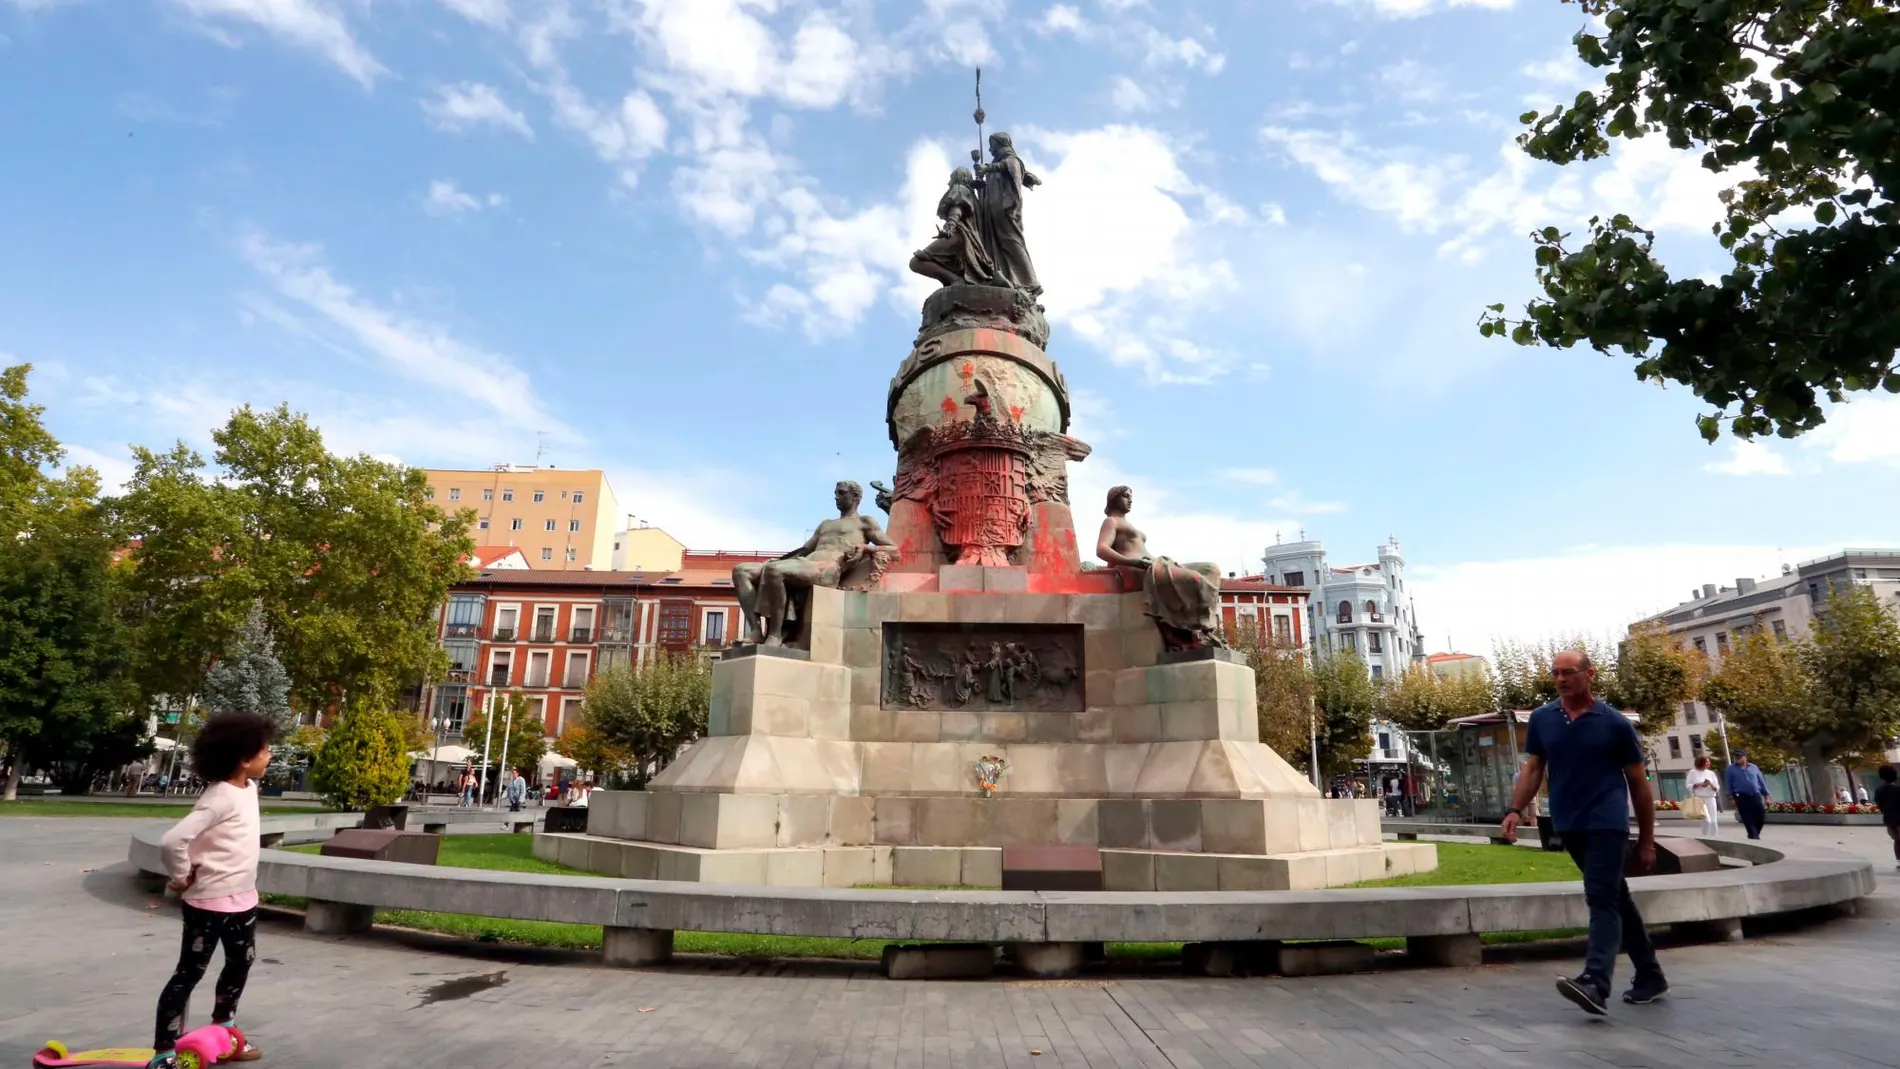 Así amaneció el Monumento de Colón en Valladolid al Día de la Fiesta Nacional el pasado año, y por ello VOX hará una vigilancia nocturna este domingo para evitar actos vandálicos